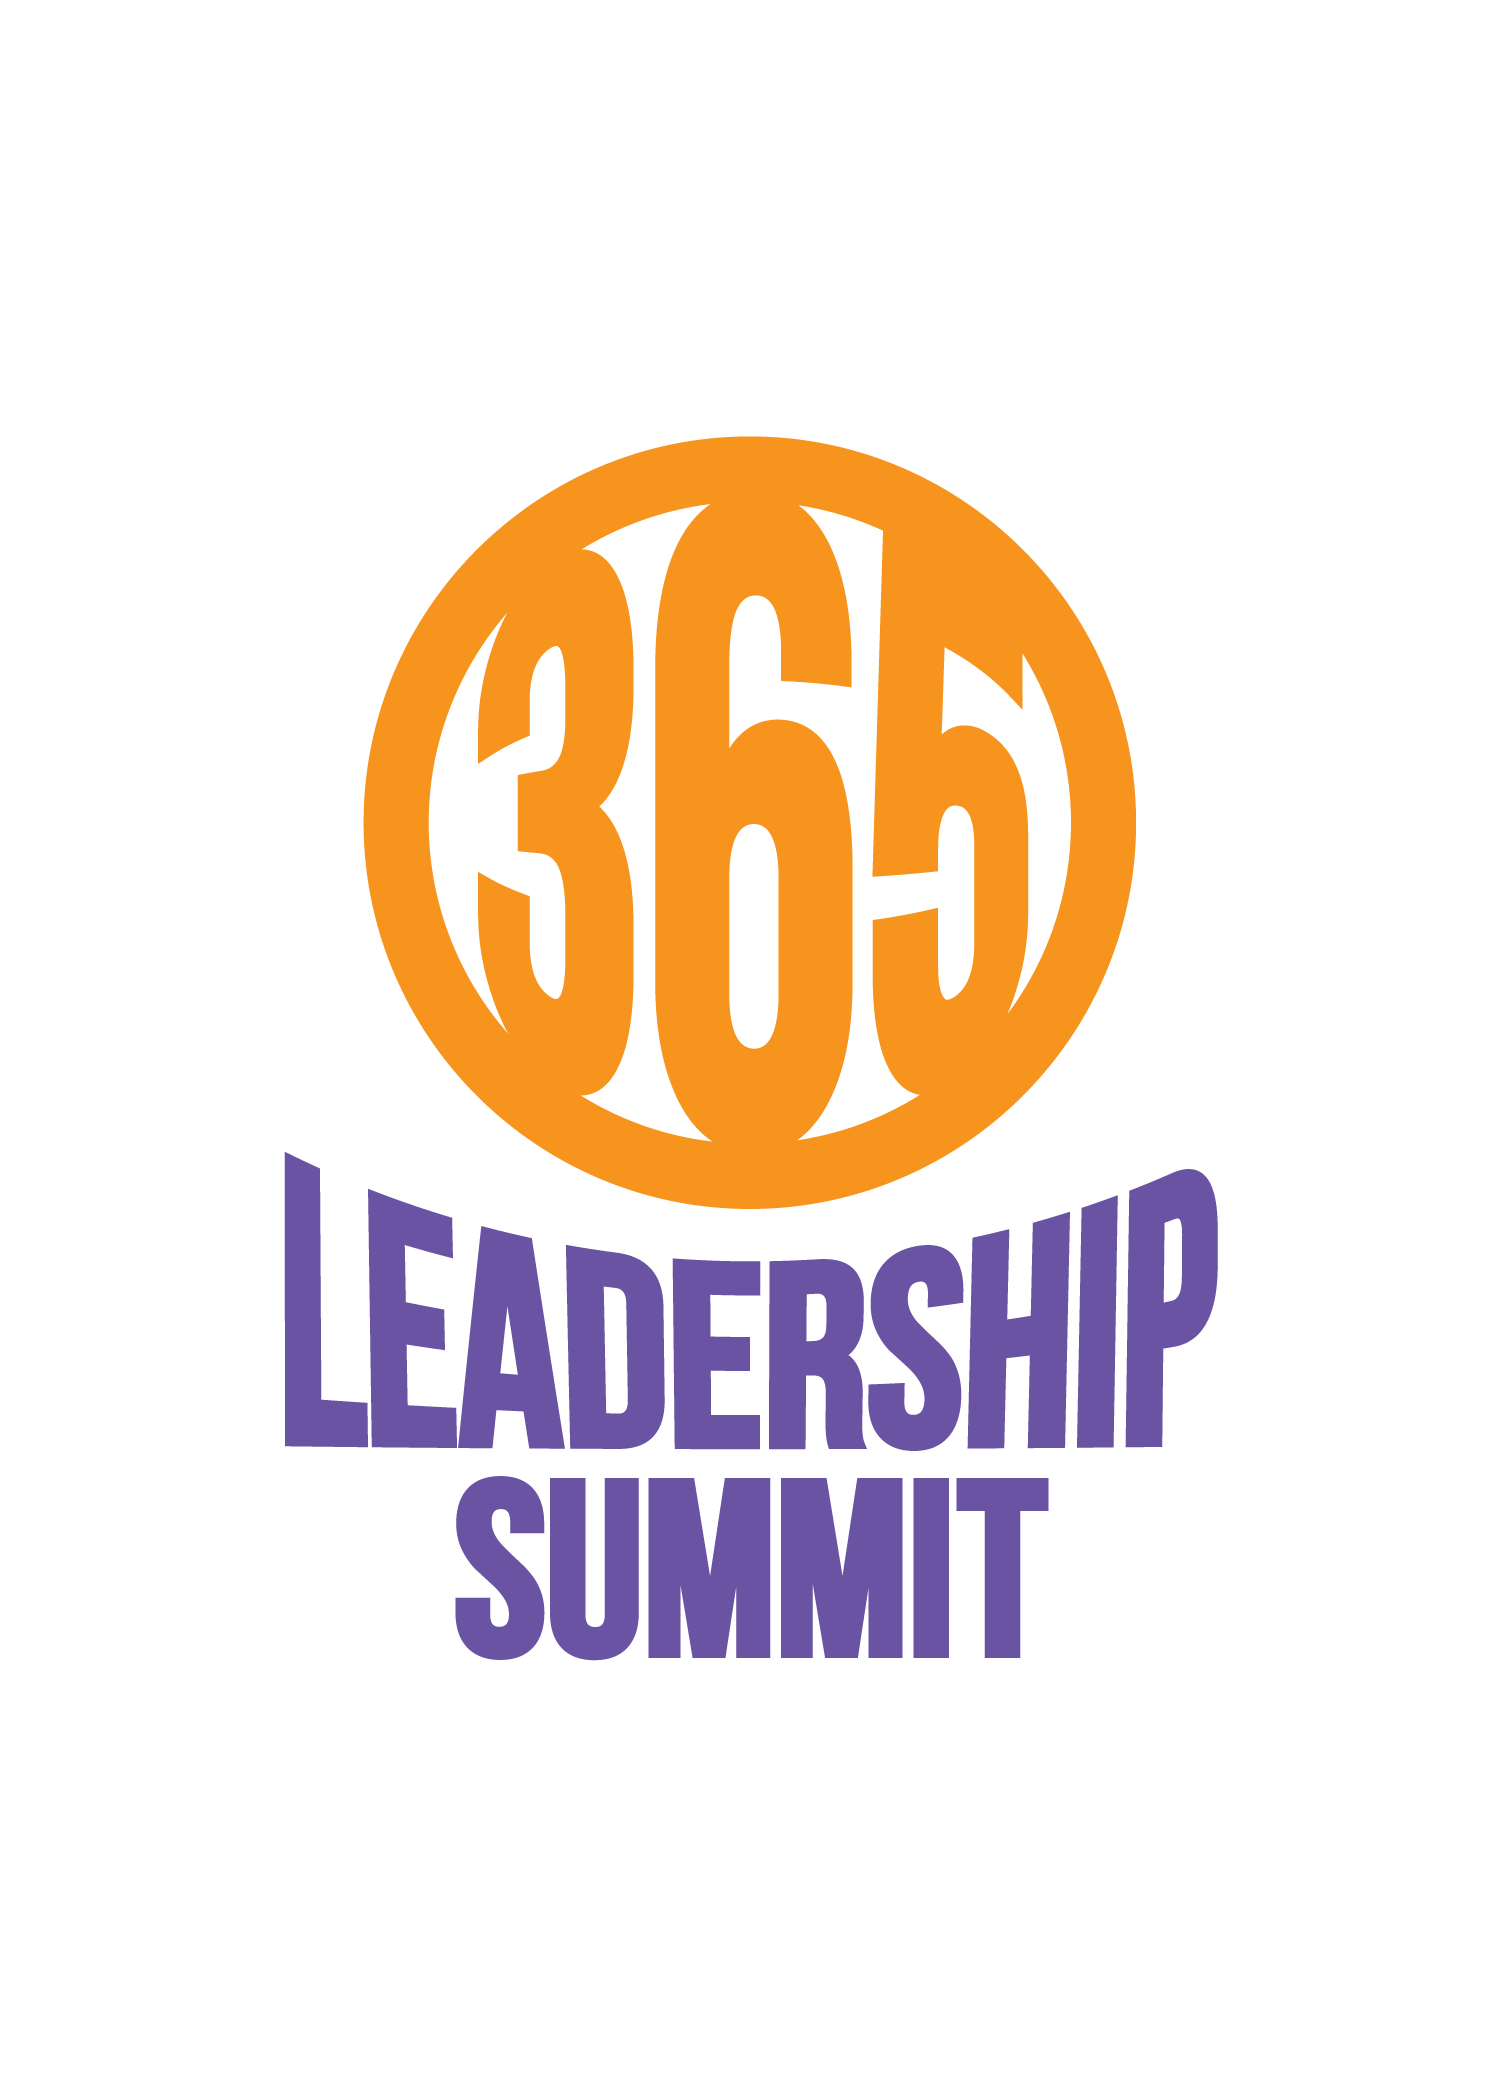 365 Leadership Summit